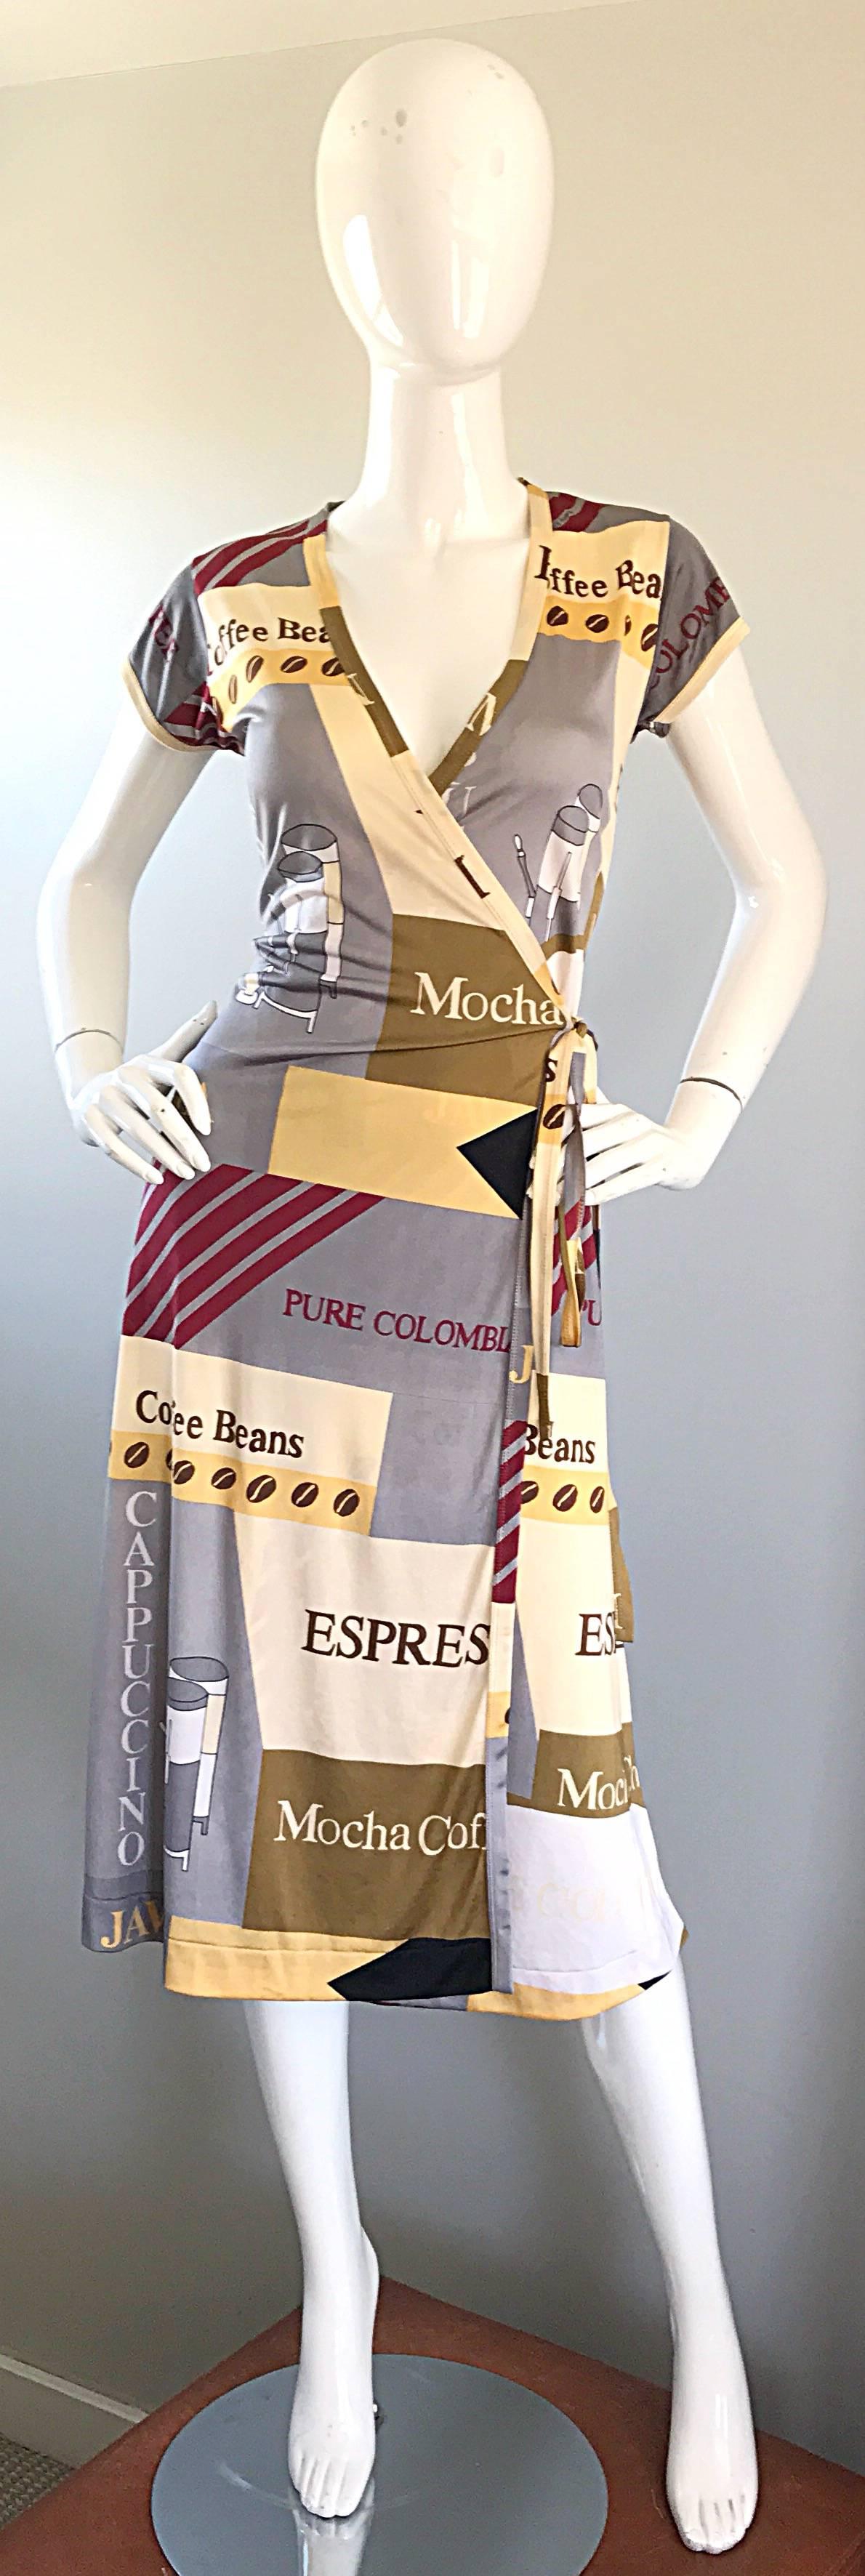 Incroyable robe portefeuille WAYNE ROGERS des années 1970 à imprimé café ! Présente les noms des cafés, notamment Espresso, Cappuccino, Mocha, Pure Columbian, Coffee Beans, etc. tout au long de l'ouvrage. On y trouve également des tasses à café, des